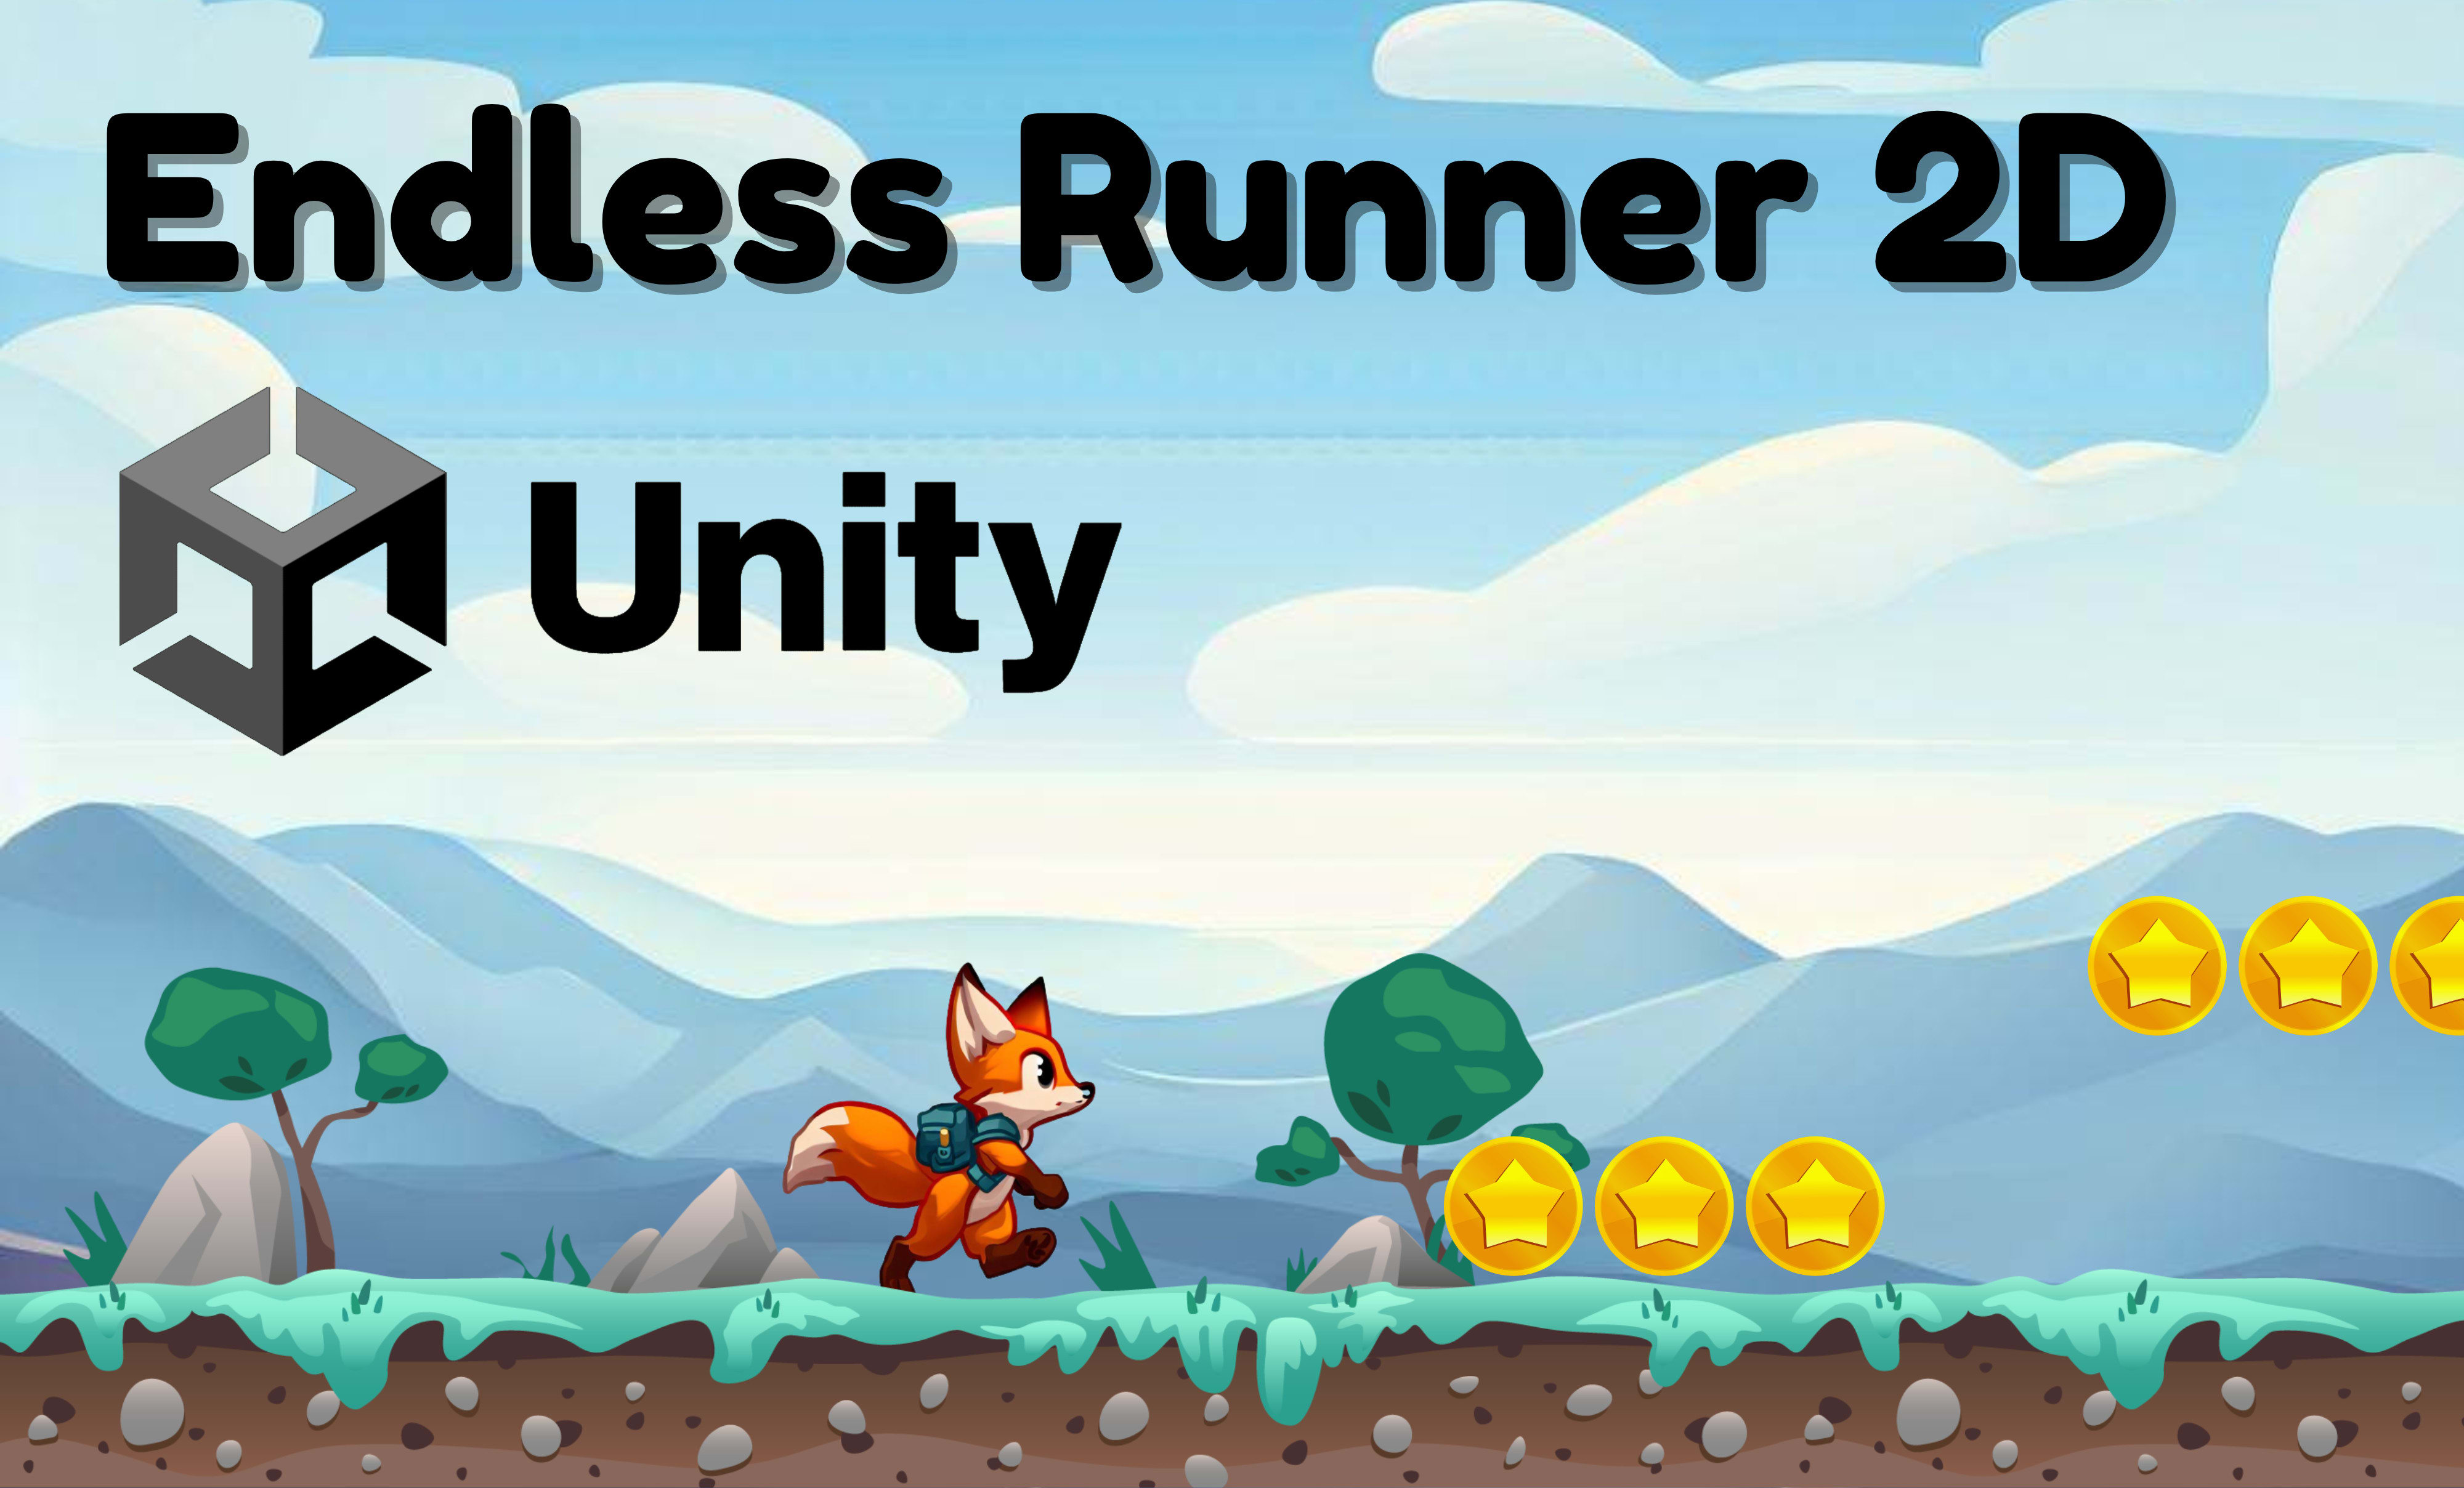 GitHub - faridfr45/2D-Endless-Runner: 2D Endless Runner Game